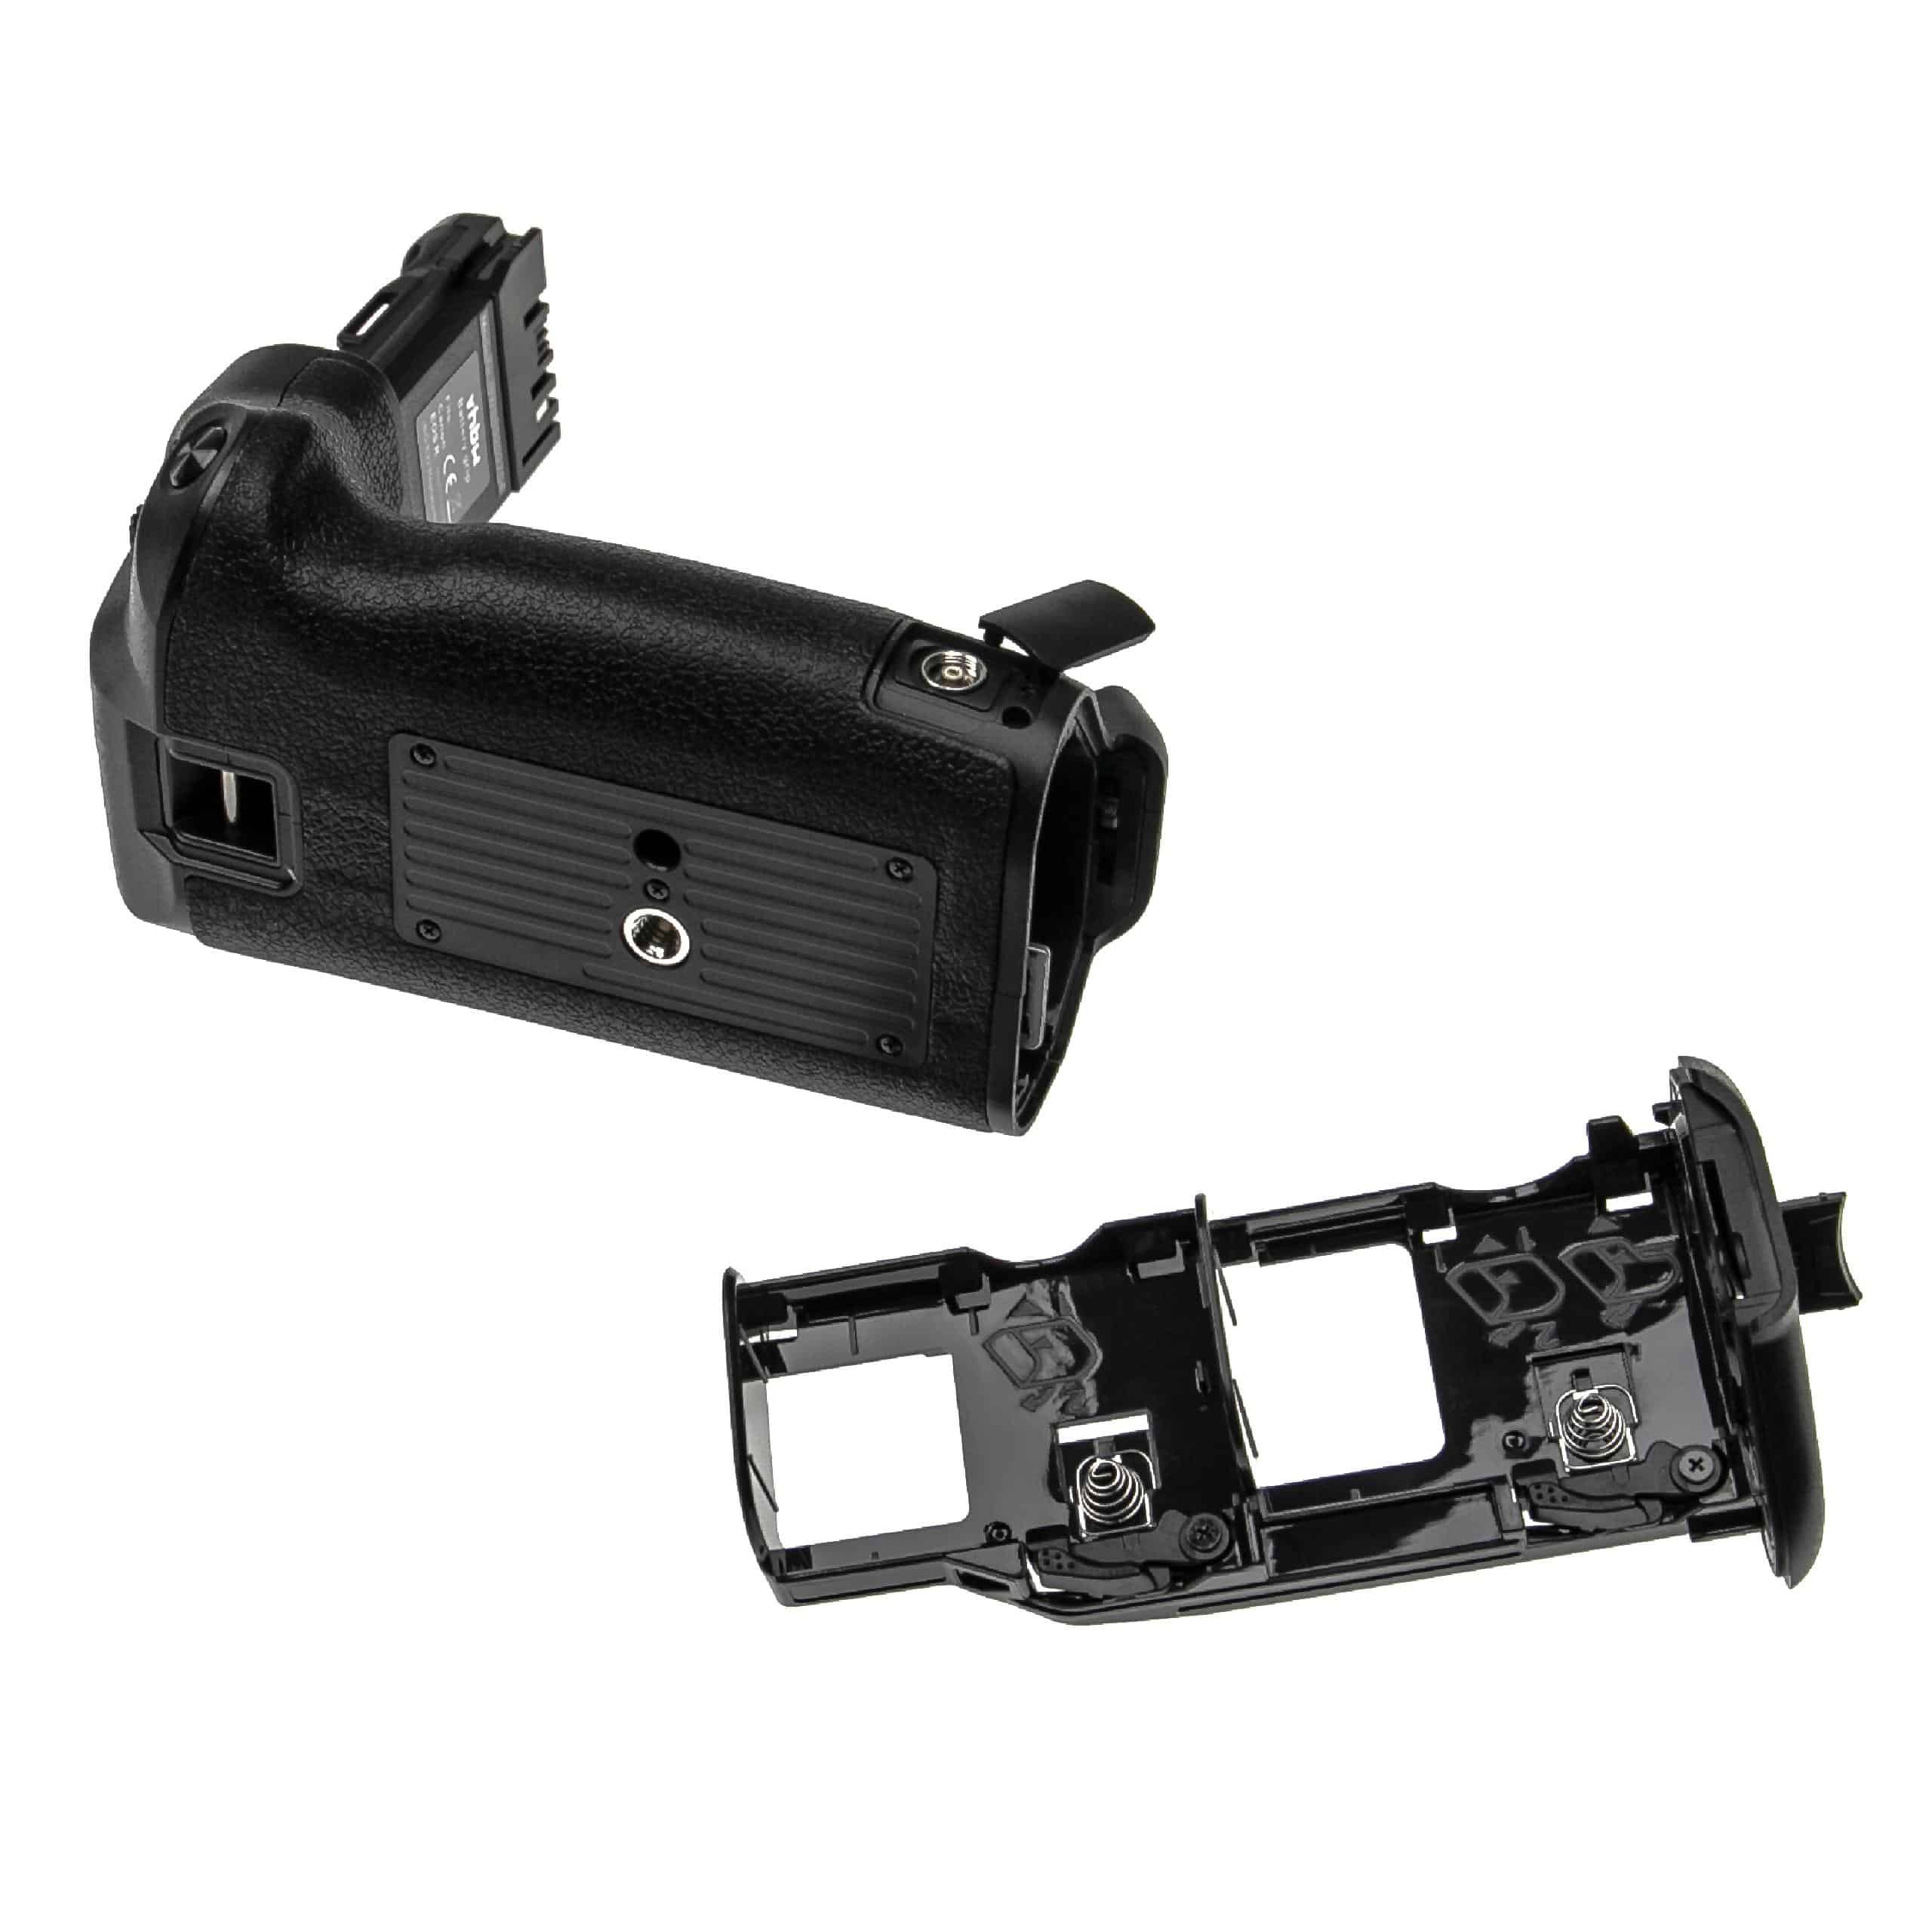 Empuñadura de batería reemplaza Canon BG-E22, 3086C003 para camara Canon